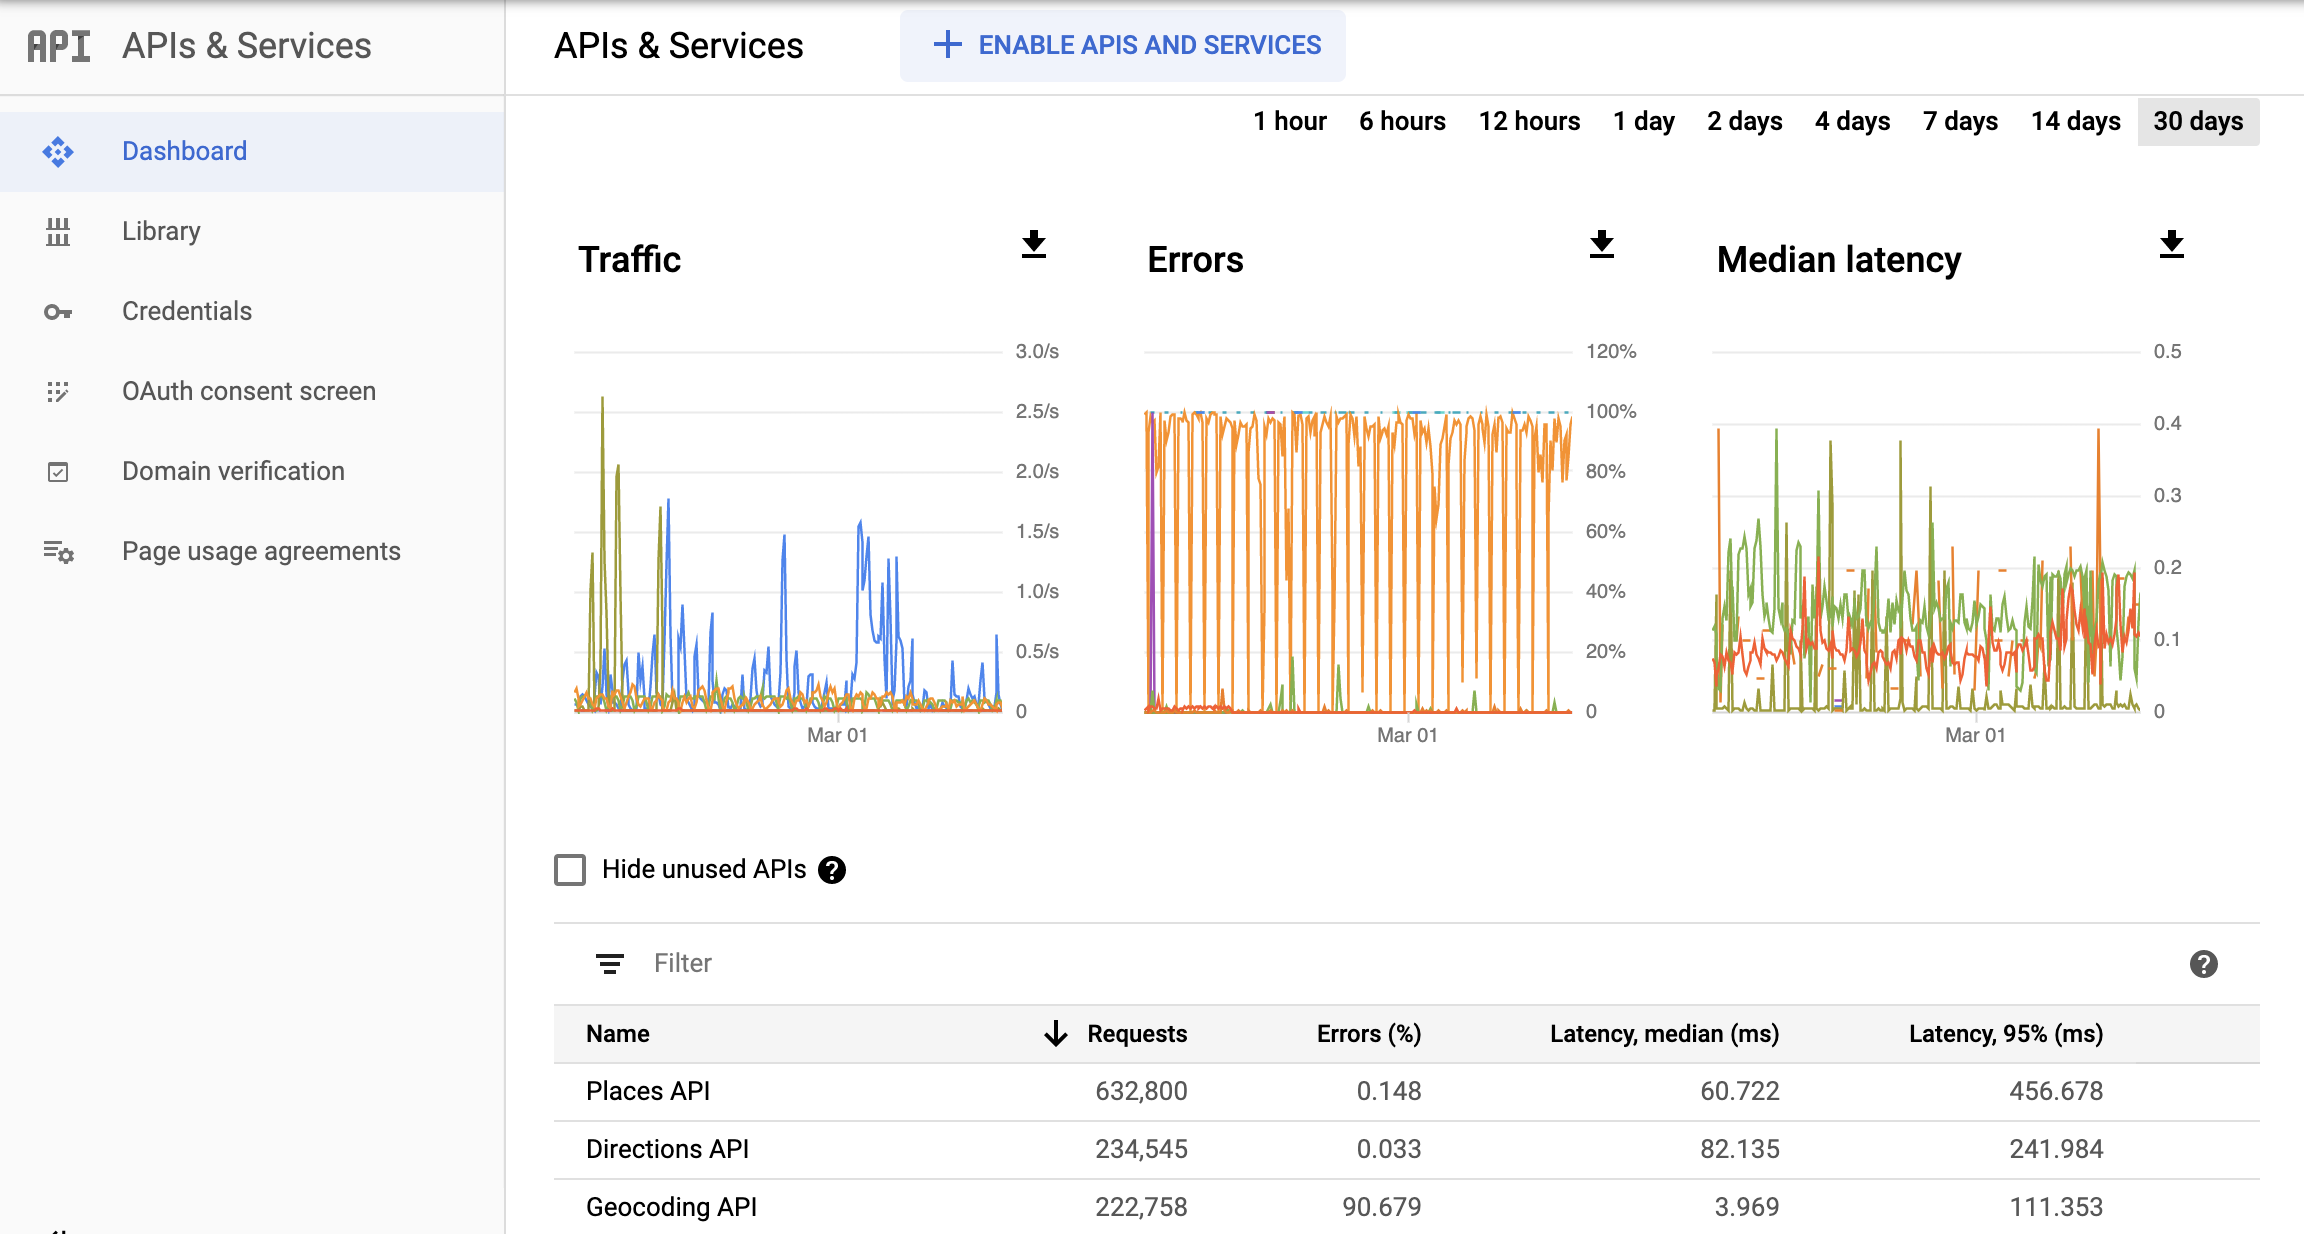 Ảnh chụp màn hình trang API theo dõi trong Google Cloud Console, hiển thị trang tổng quan về API và Dịch vụ
  báo cáo. Nó cho thấy các biểu đồ riêng biệt về Lưu lượng truy cập, Lỗi và Độ trễ trung bình. Các biểu đồ này có thể hiển thị dữ liệu trong vòng 1 giờ đến 30 ngày qua.